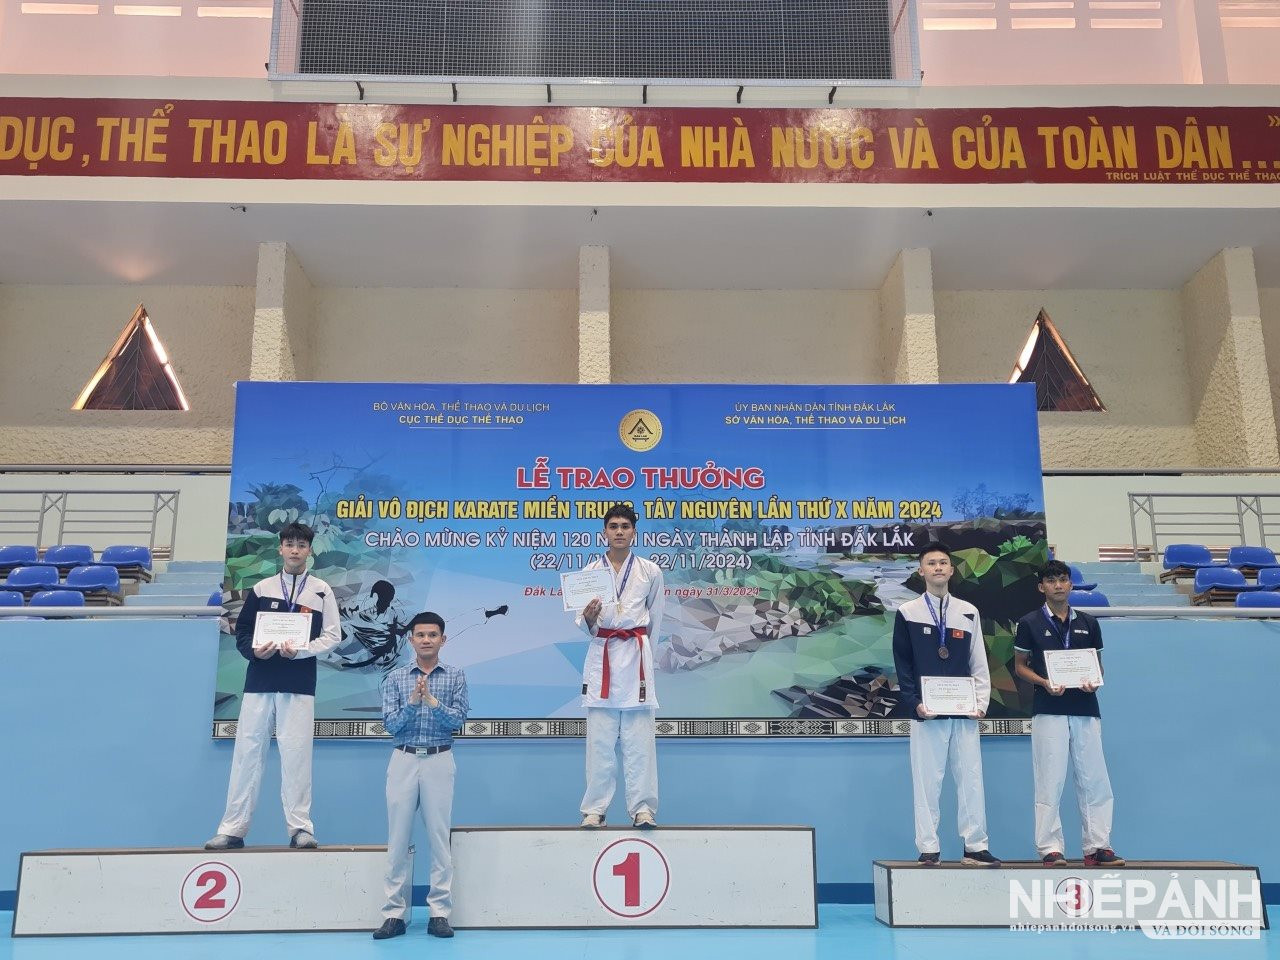 Quảng Bình giành 15 huy chương ở Giải vô địch Karate miền Trung - Tây Nguyên

